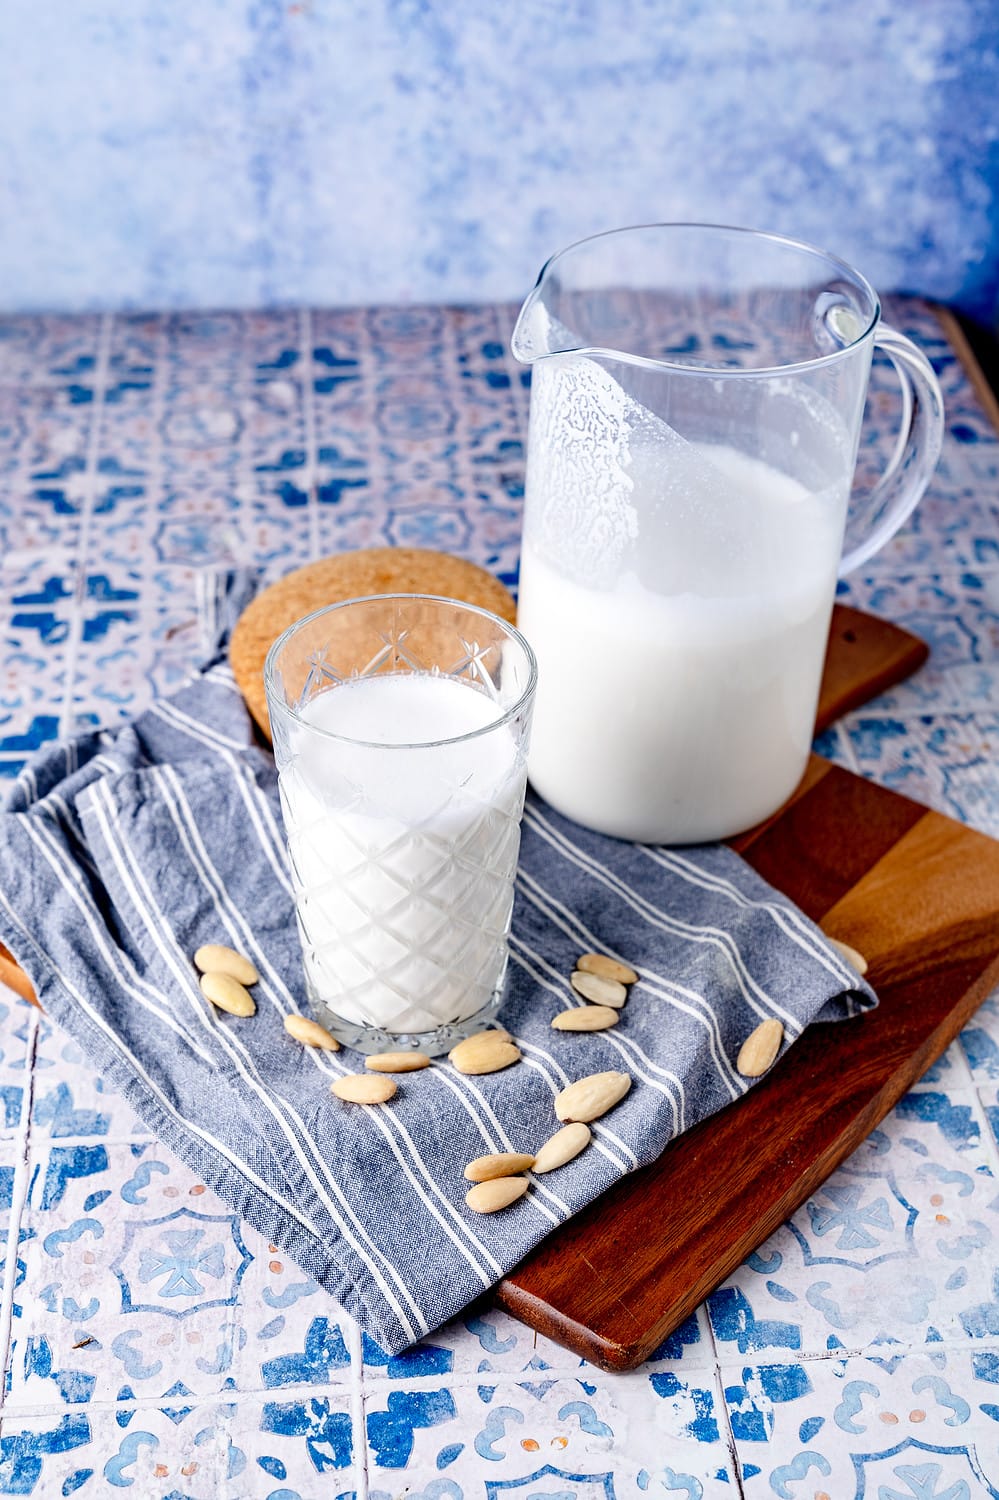 Bei uns besteht die vegane Milch-Alternative aus drei Zutate: Wasser, Mandeln und Agavendicksaft.